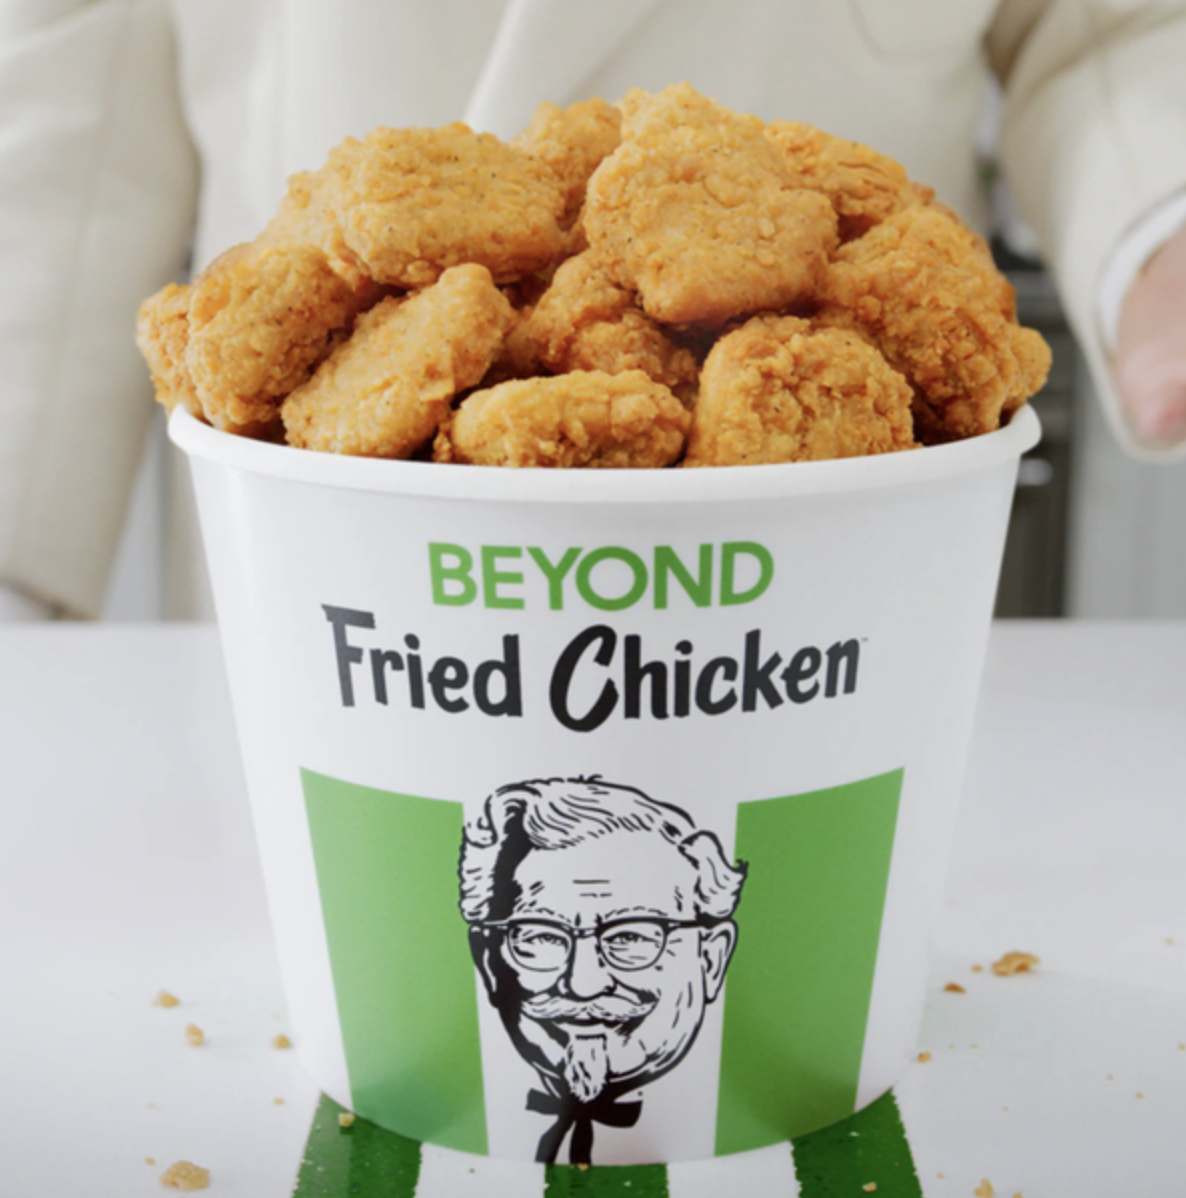 SanDiegoVille: Where To Find KFC’s Beyond Fried Chicken In San Diego